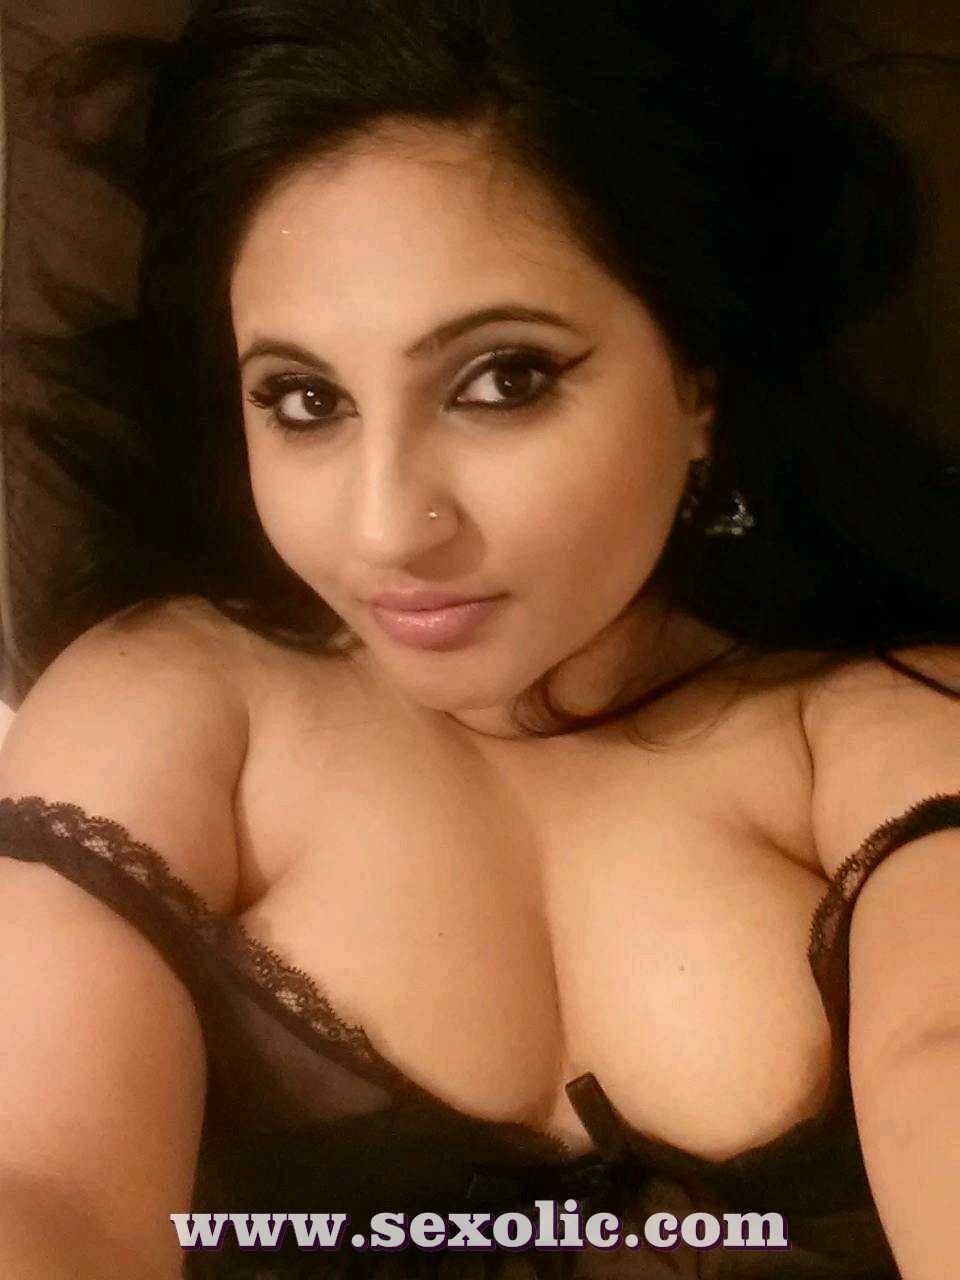 Teen Big Tits Nude Indian Girl Big Boobs Chut Porn Pics Gallery Jpg